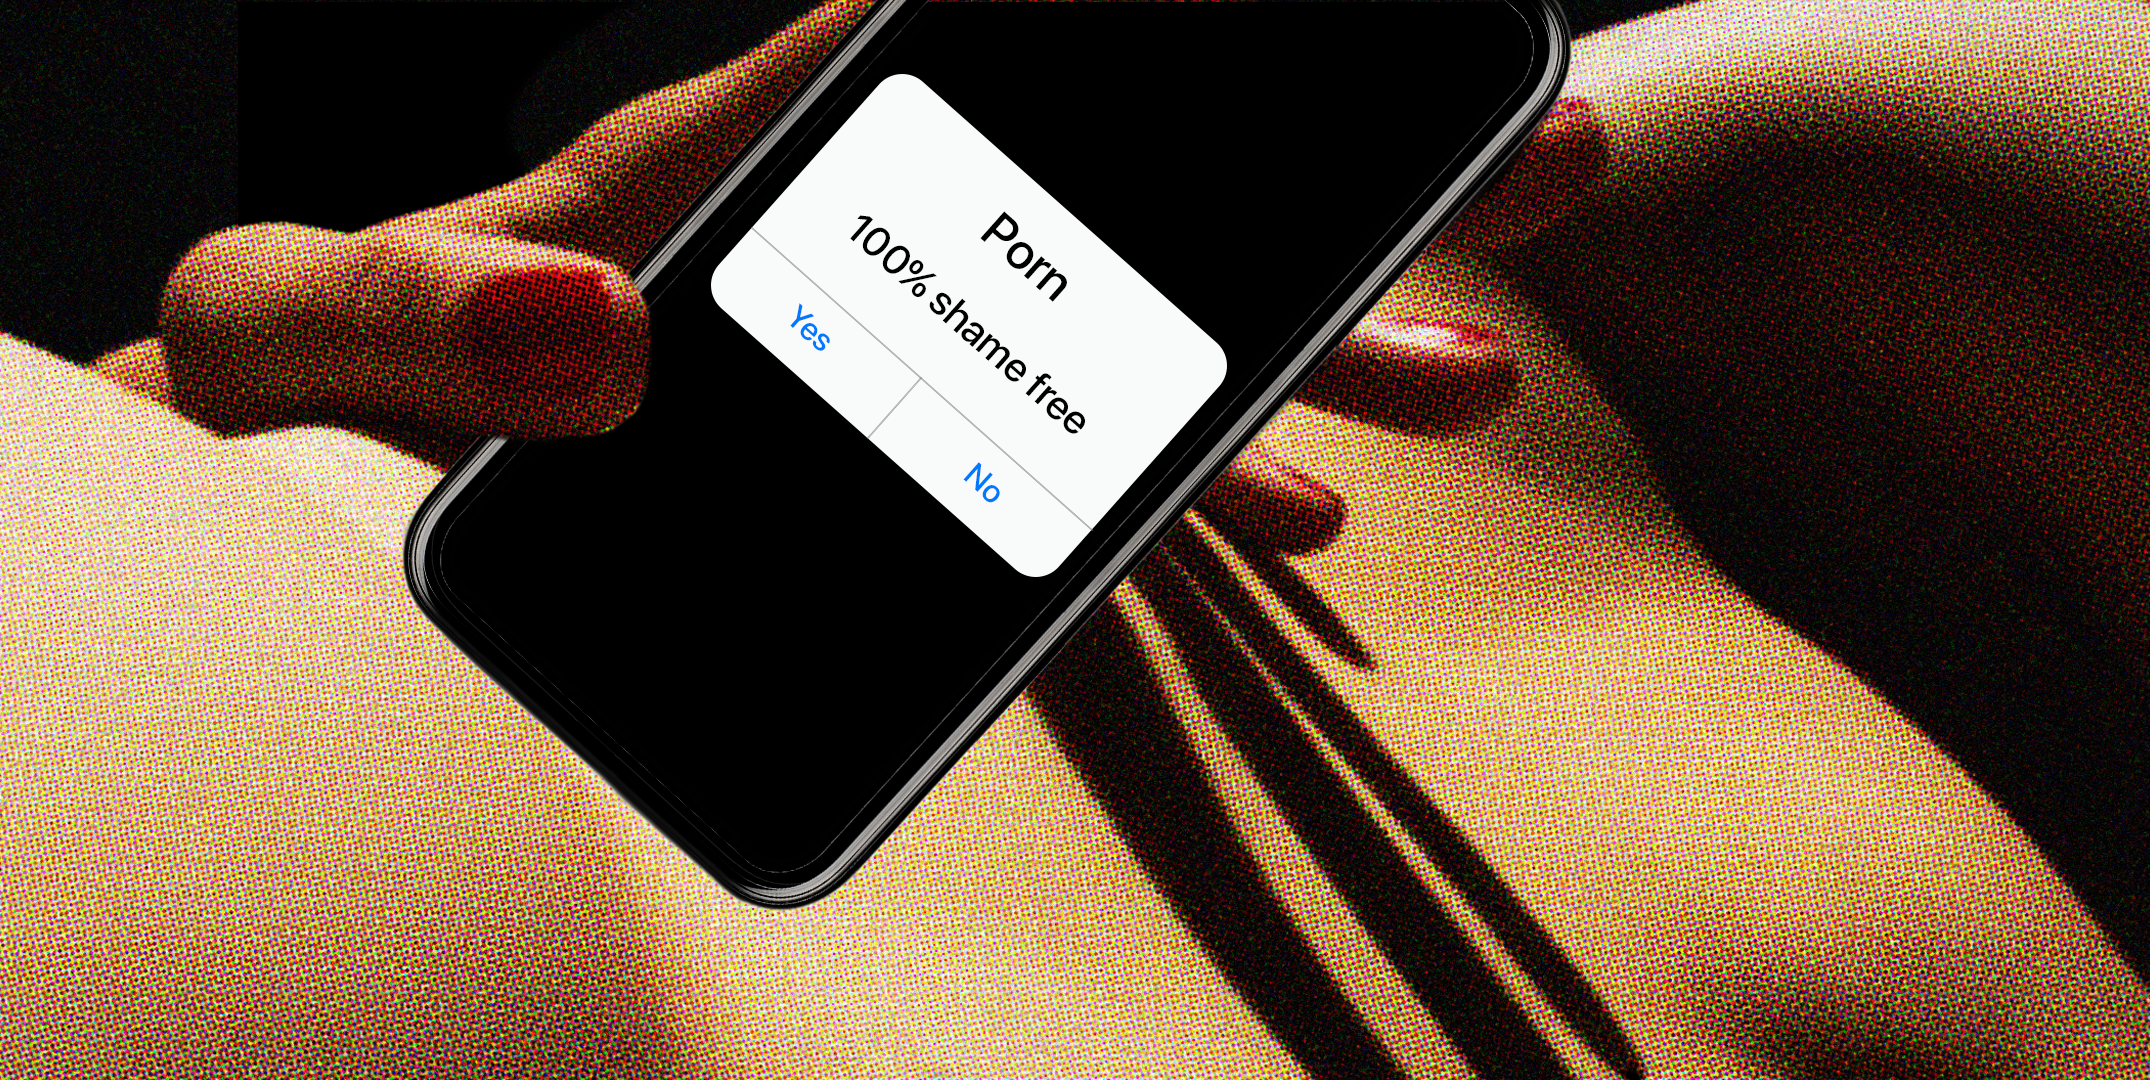 Porn For Normal Phone - Best Safe Porn Sites 2023 - 17 Safe Porn Sites